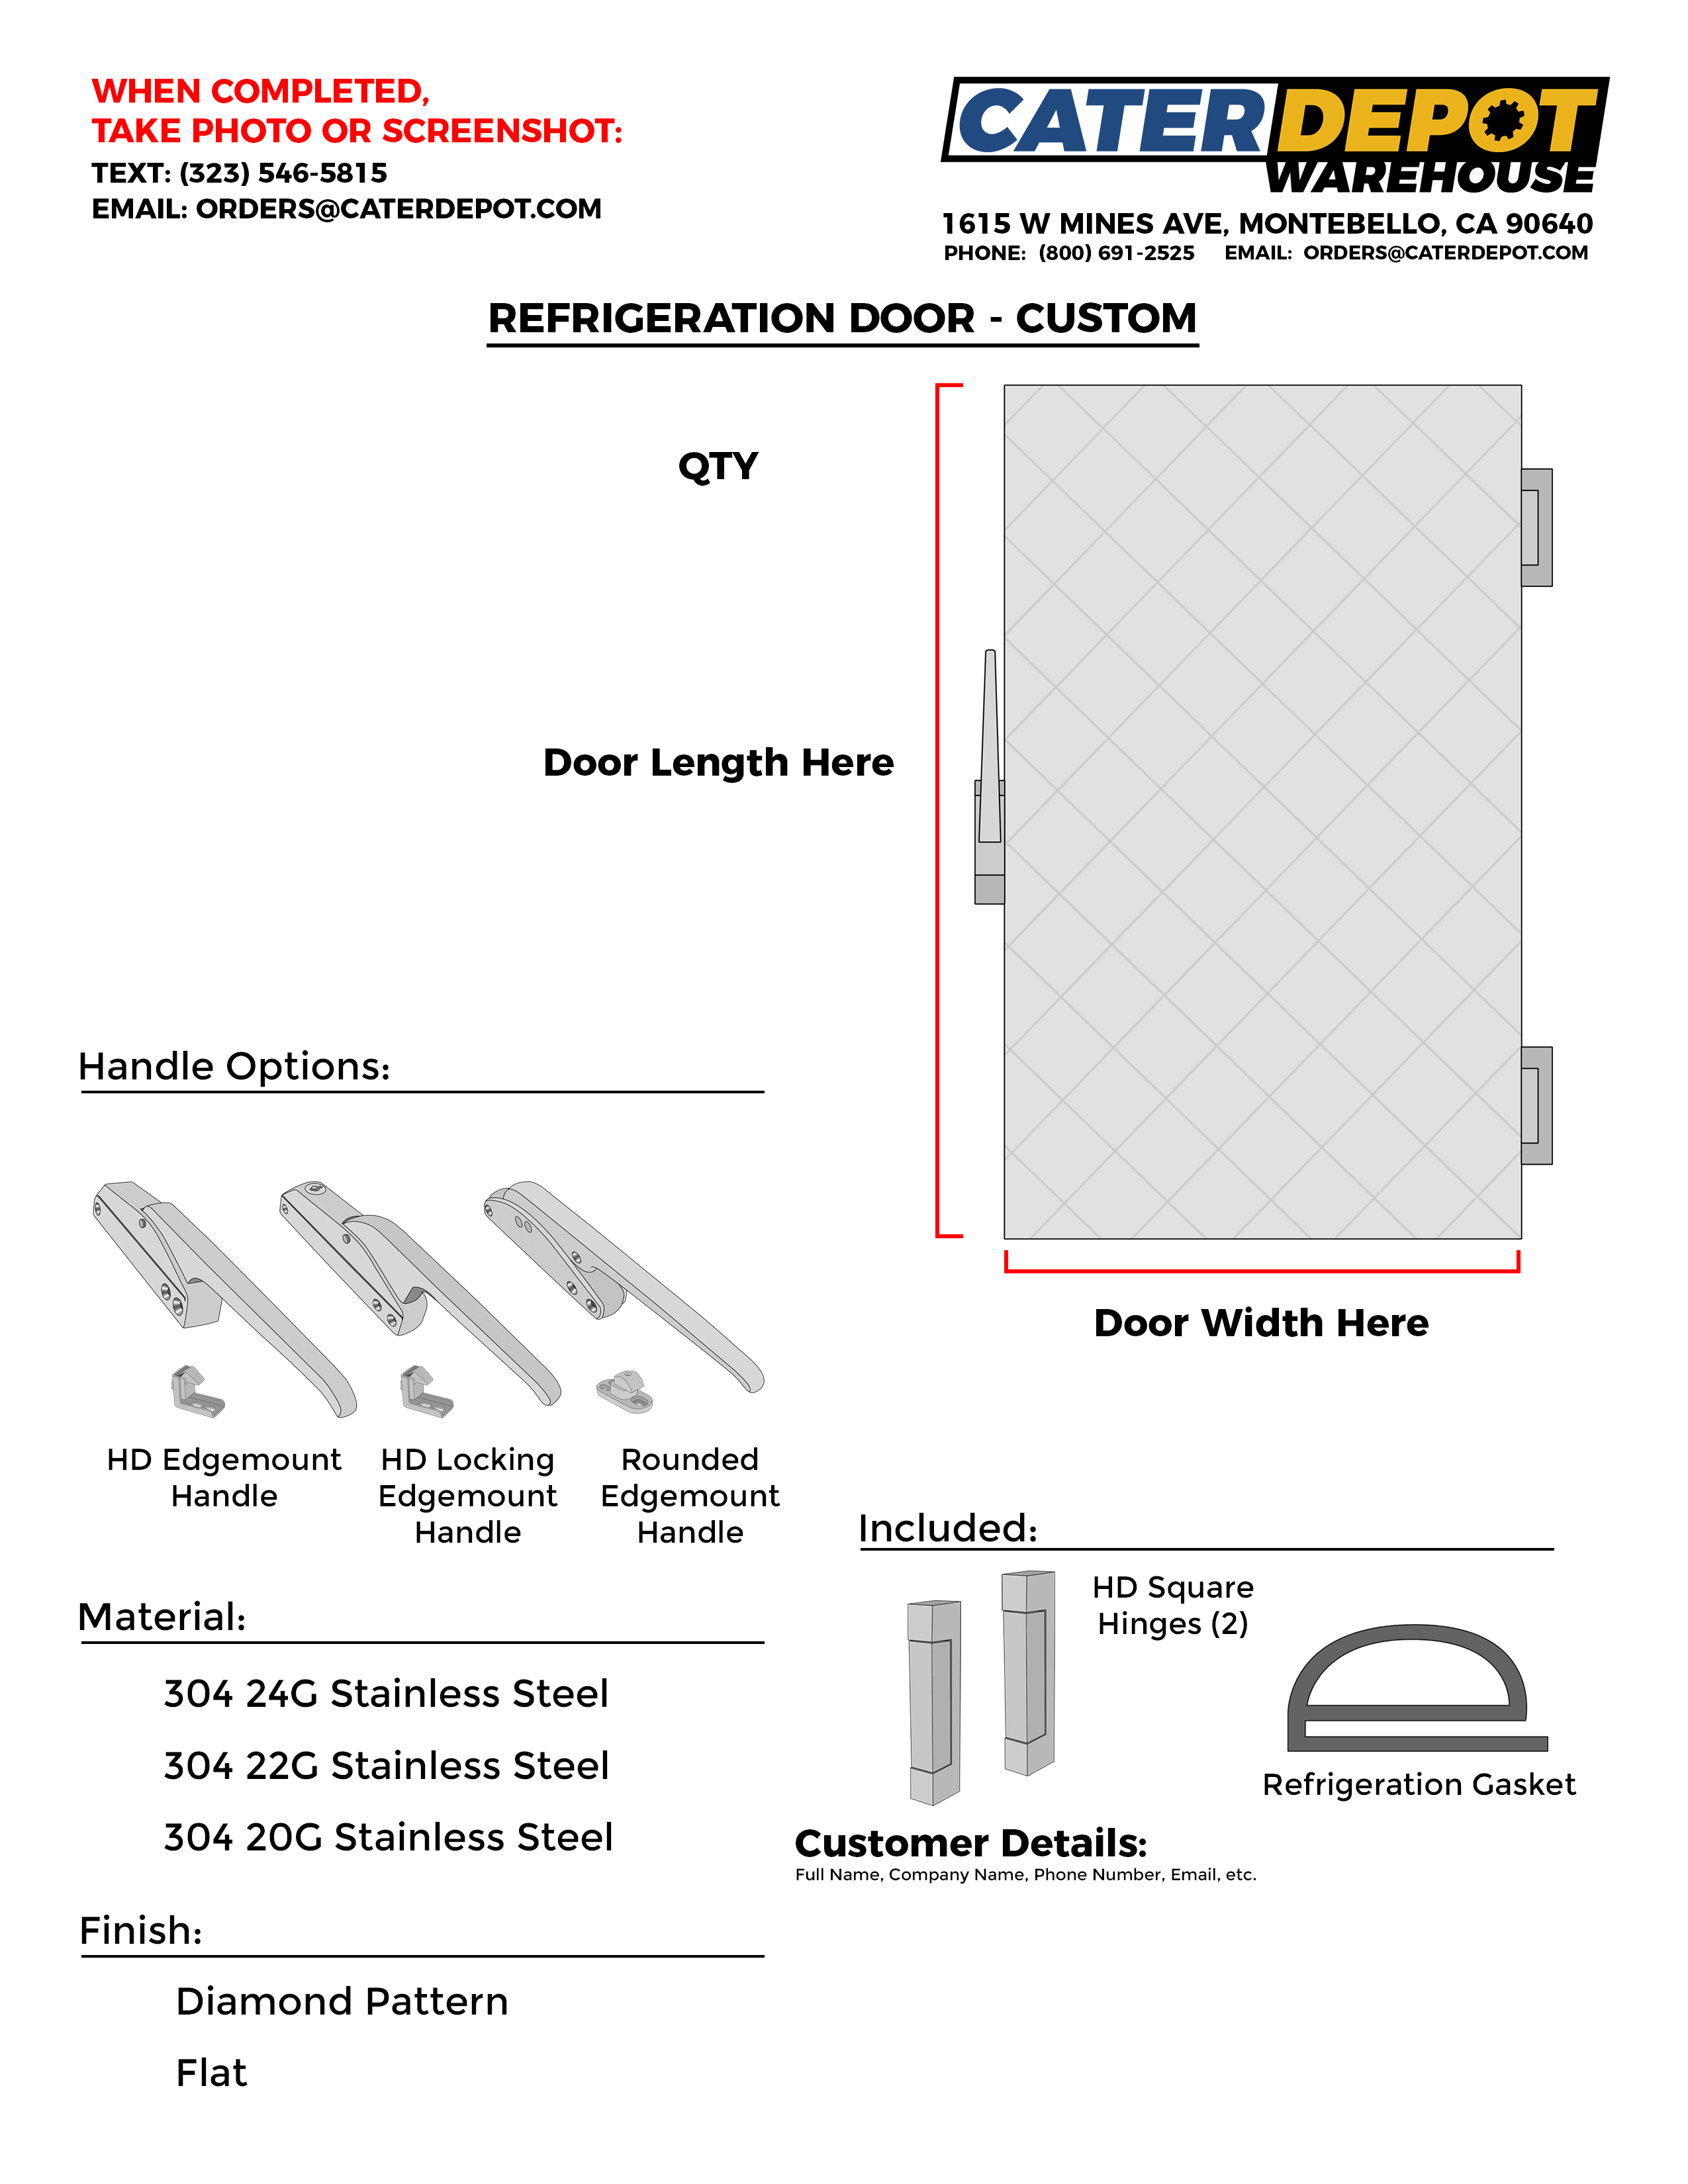 Custom Refrigeration Door